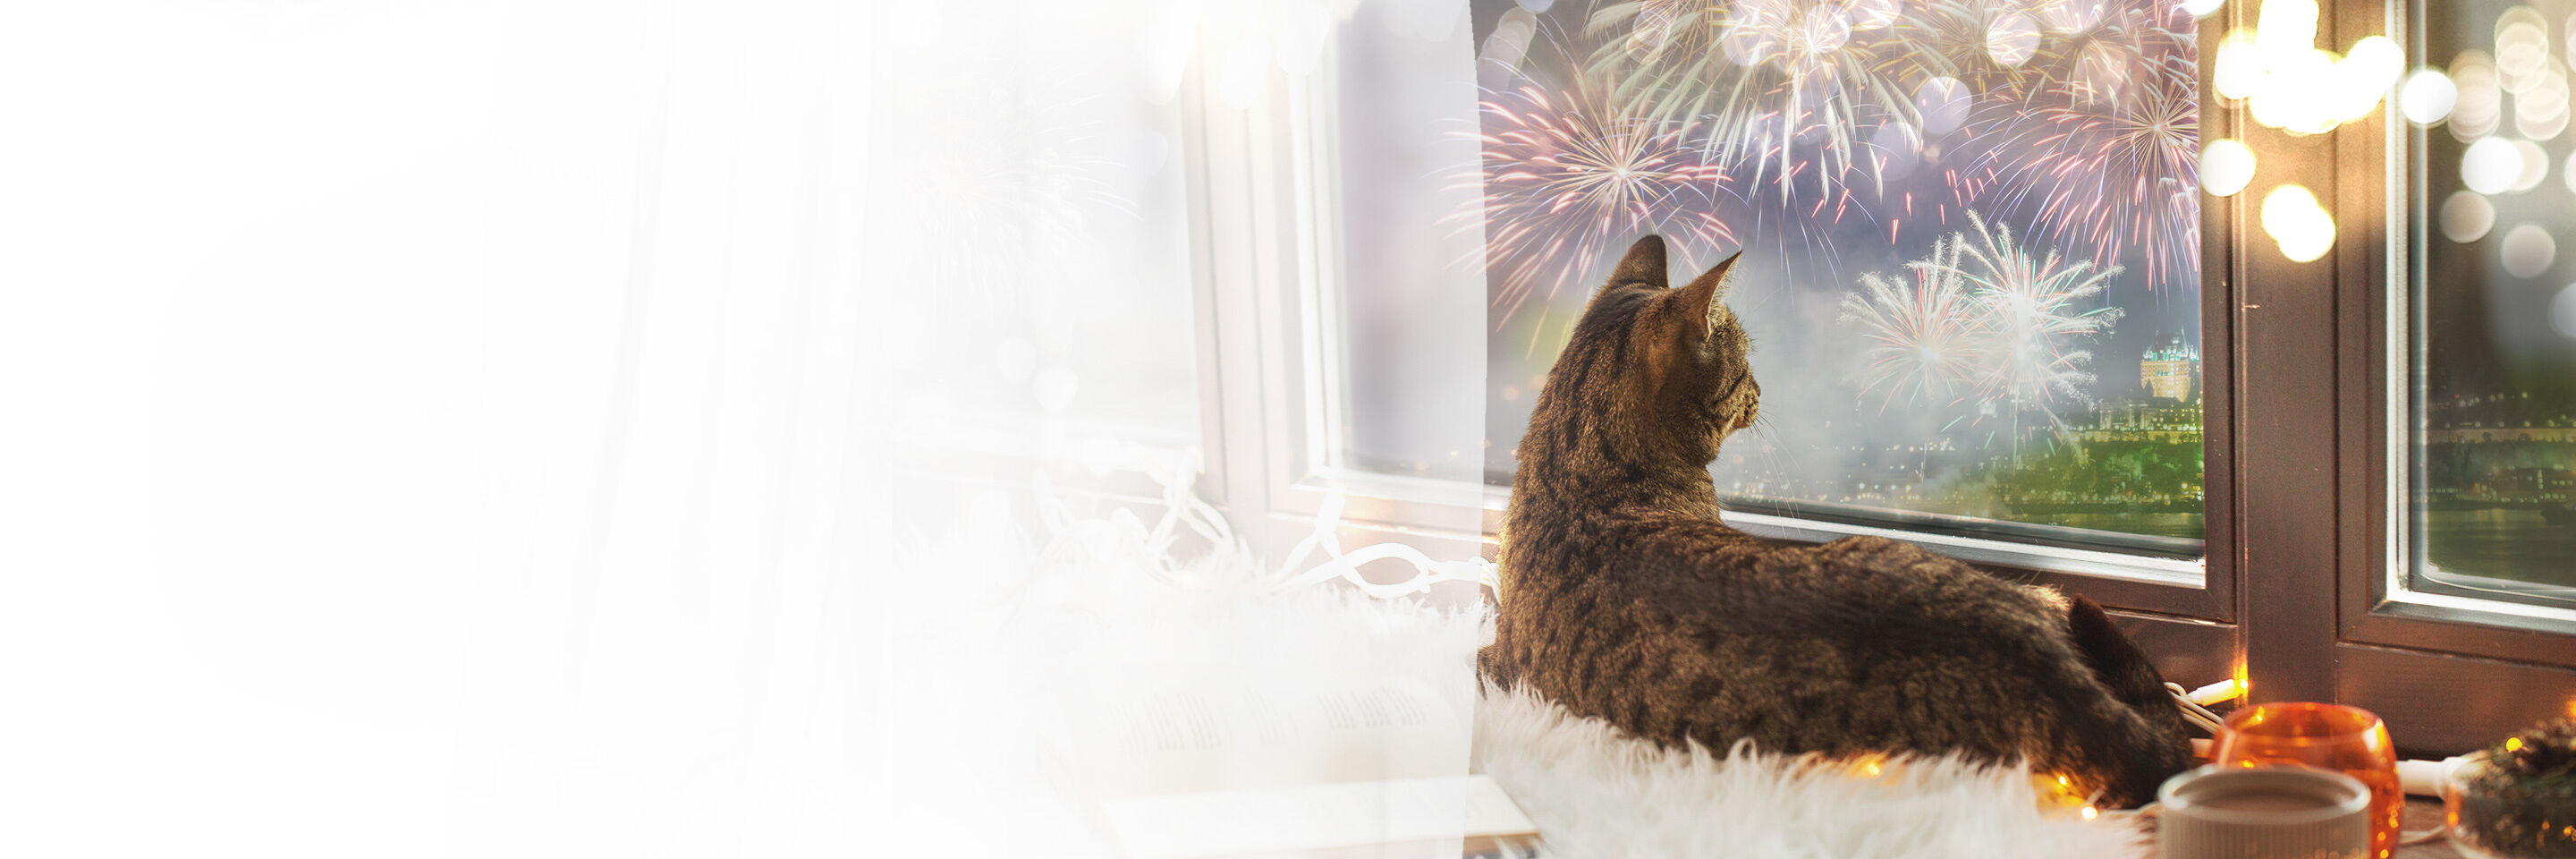 Katze liegt am Fenster und beobachtet das Silvester-Feuerwerk